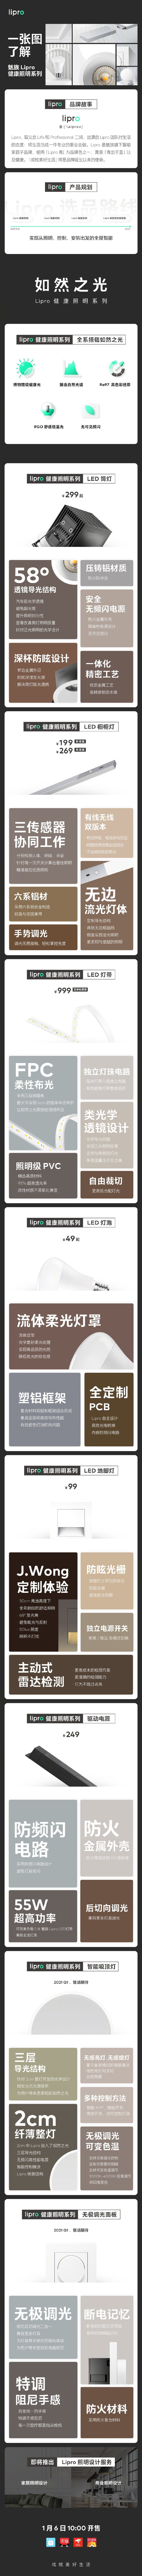 魅族《Lipro》品牌发布会：59-999元LED健康照明系列产品